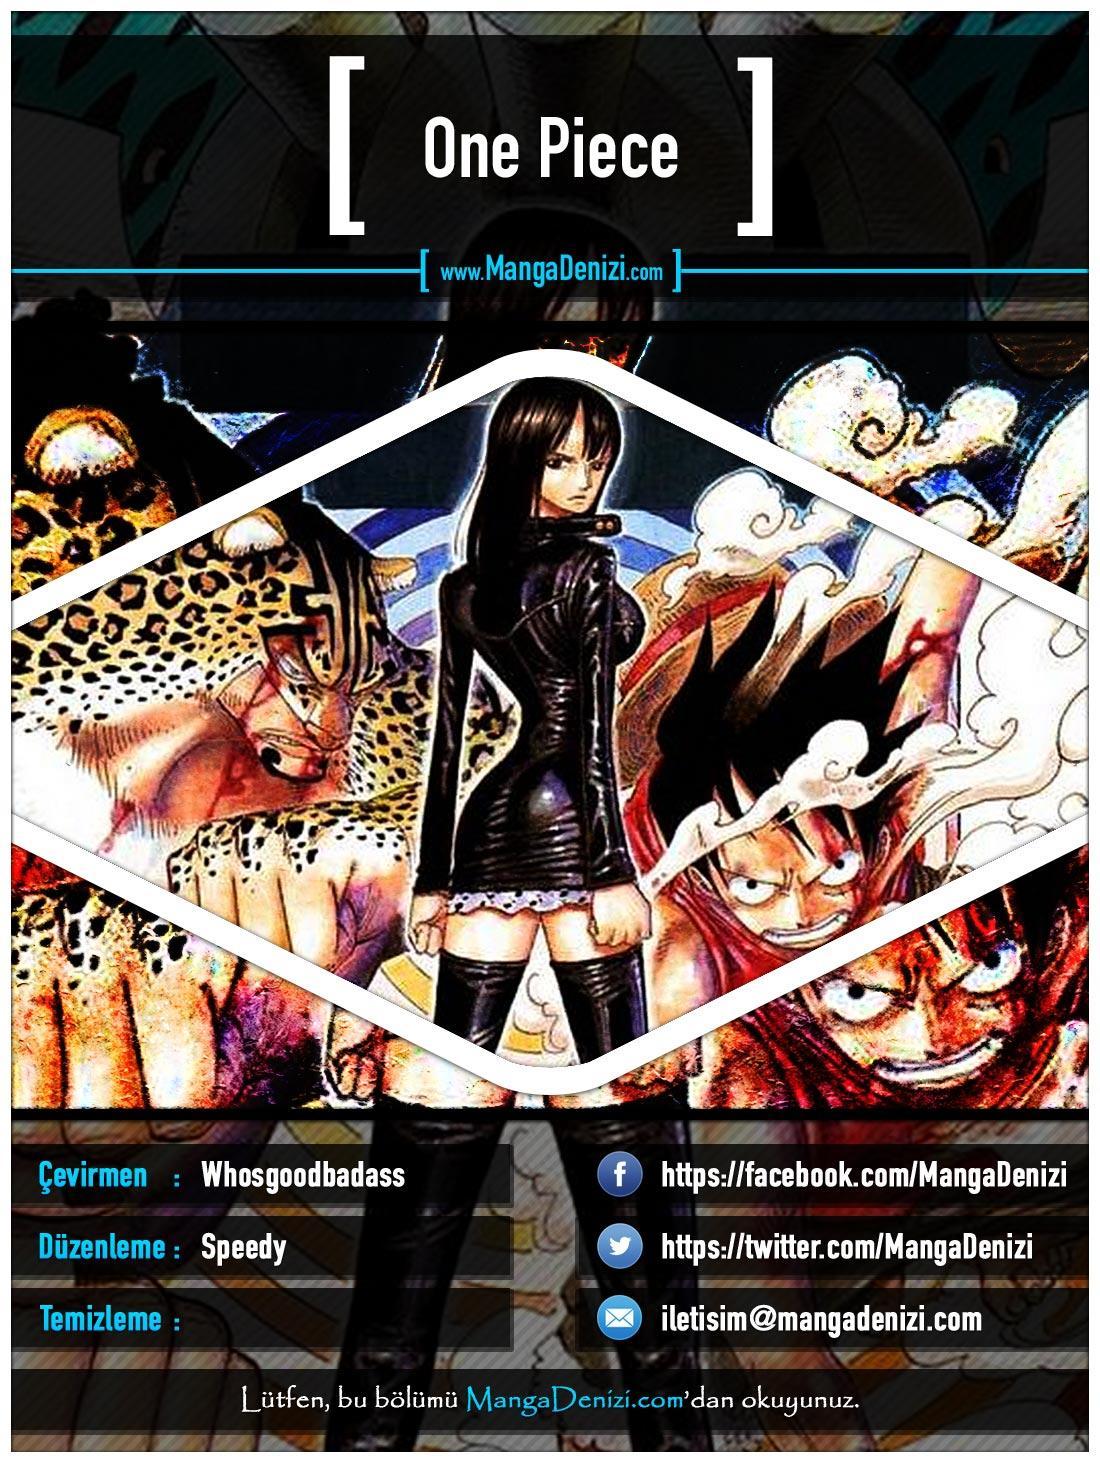 One Piece [Renkli] mangasının 0396 bölümünün 1. sayfasını okuyorsunuz.